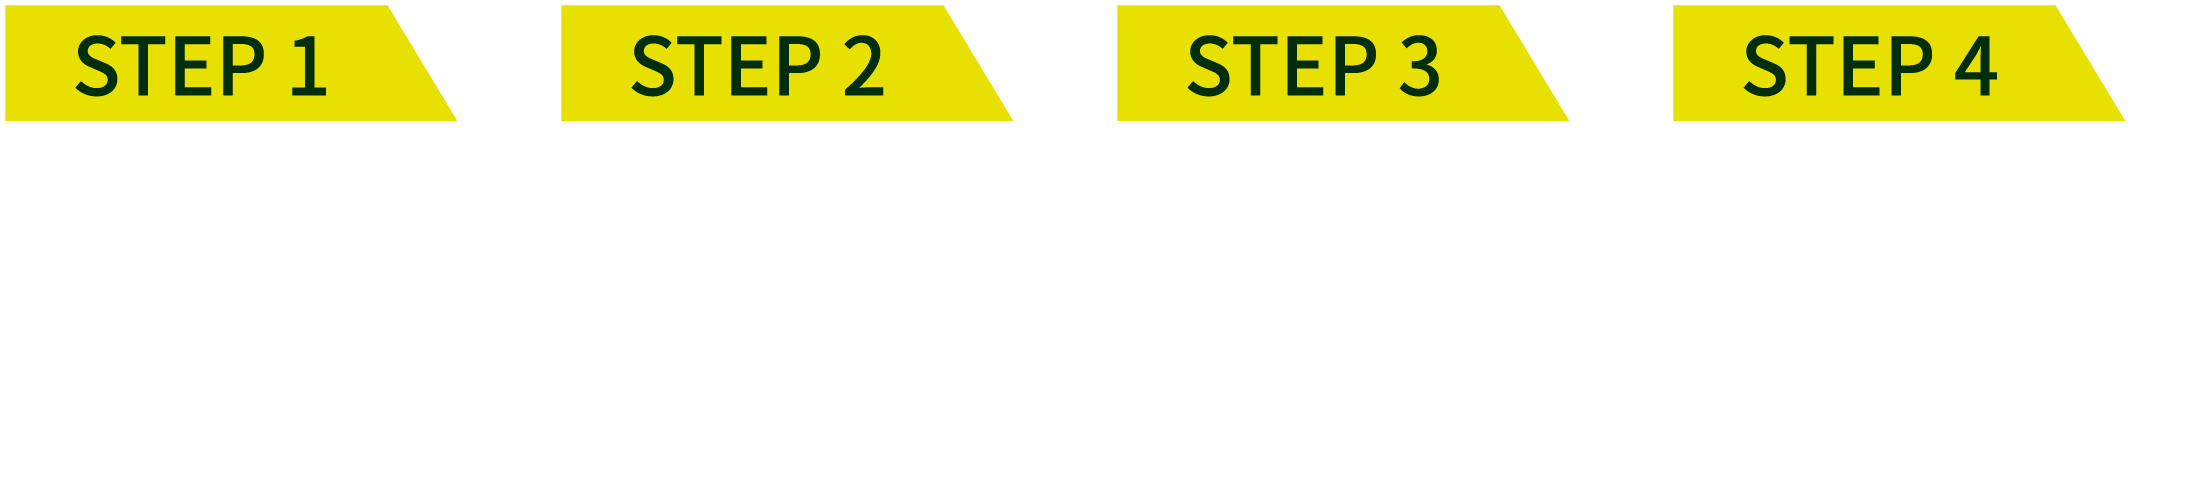 STEP 1 登録・応募に必要な書類・情報のご用意 STEP 2 「レグザメンバーズ」会員登録 STEP 3 「レグザメンバーズ」商品登録 STEP 4 キャンペーンに応募